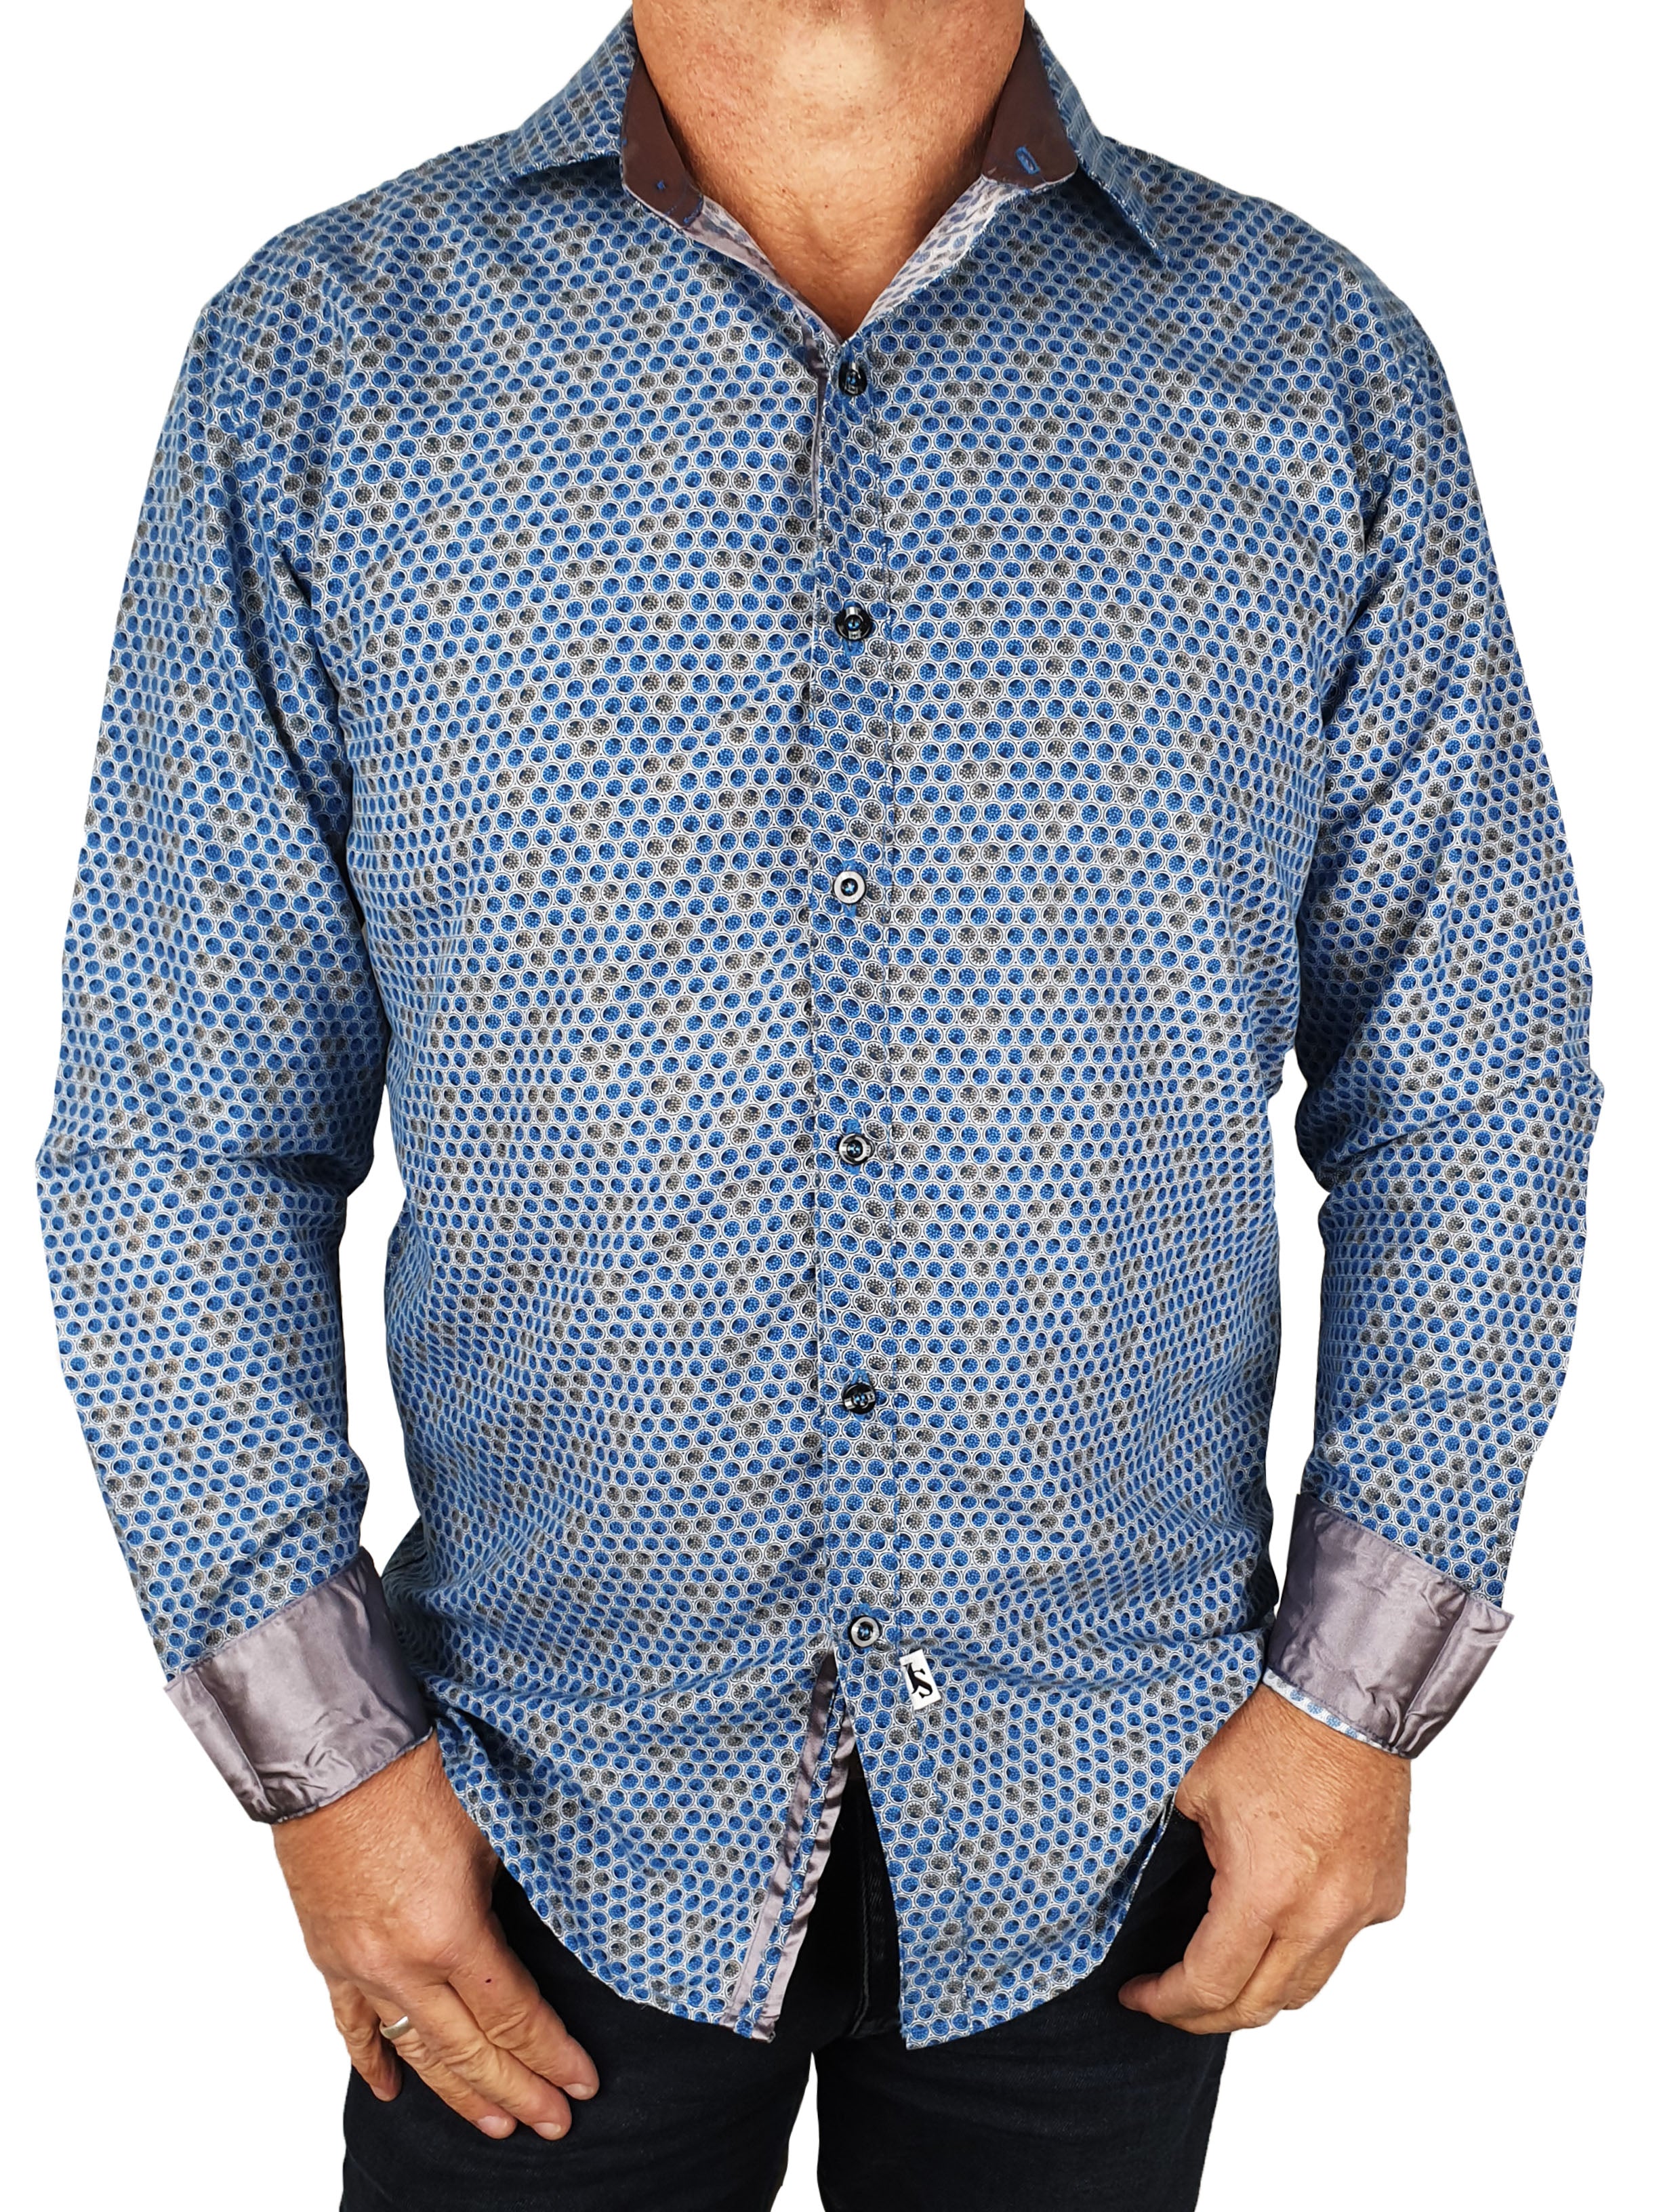 Nuclear Geometric Cotton/Nylon L/S Big Mens Shirt - Navy/Grey